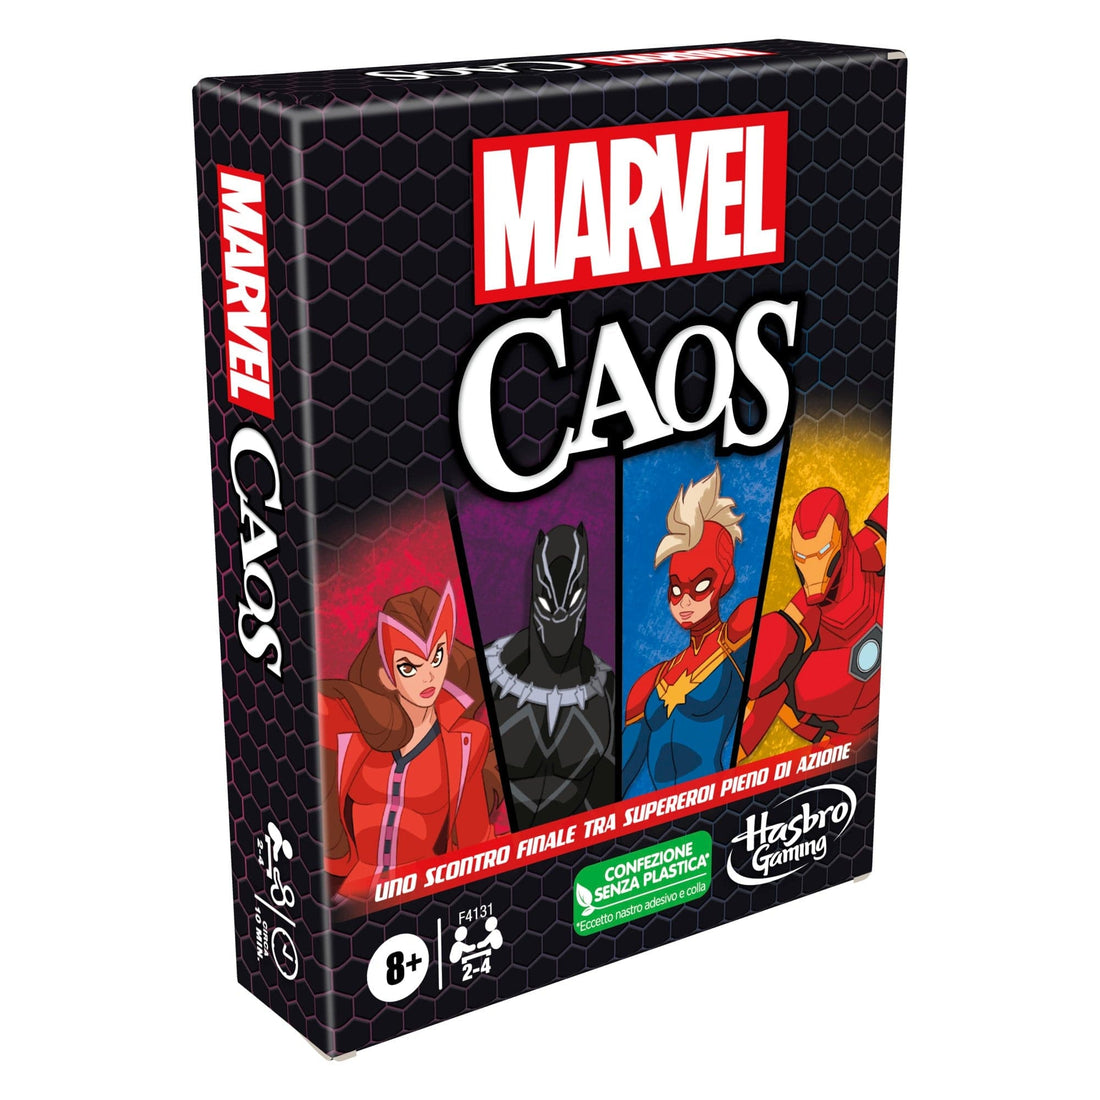 Marvel Caos Italian Ed